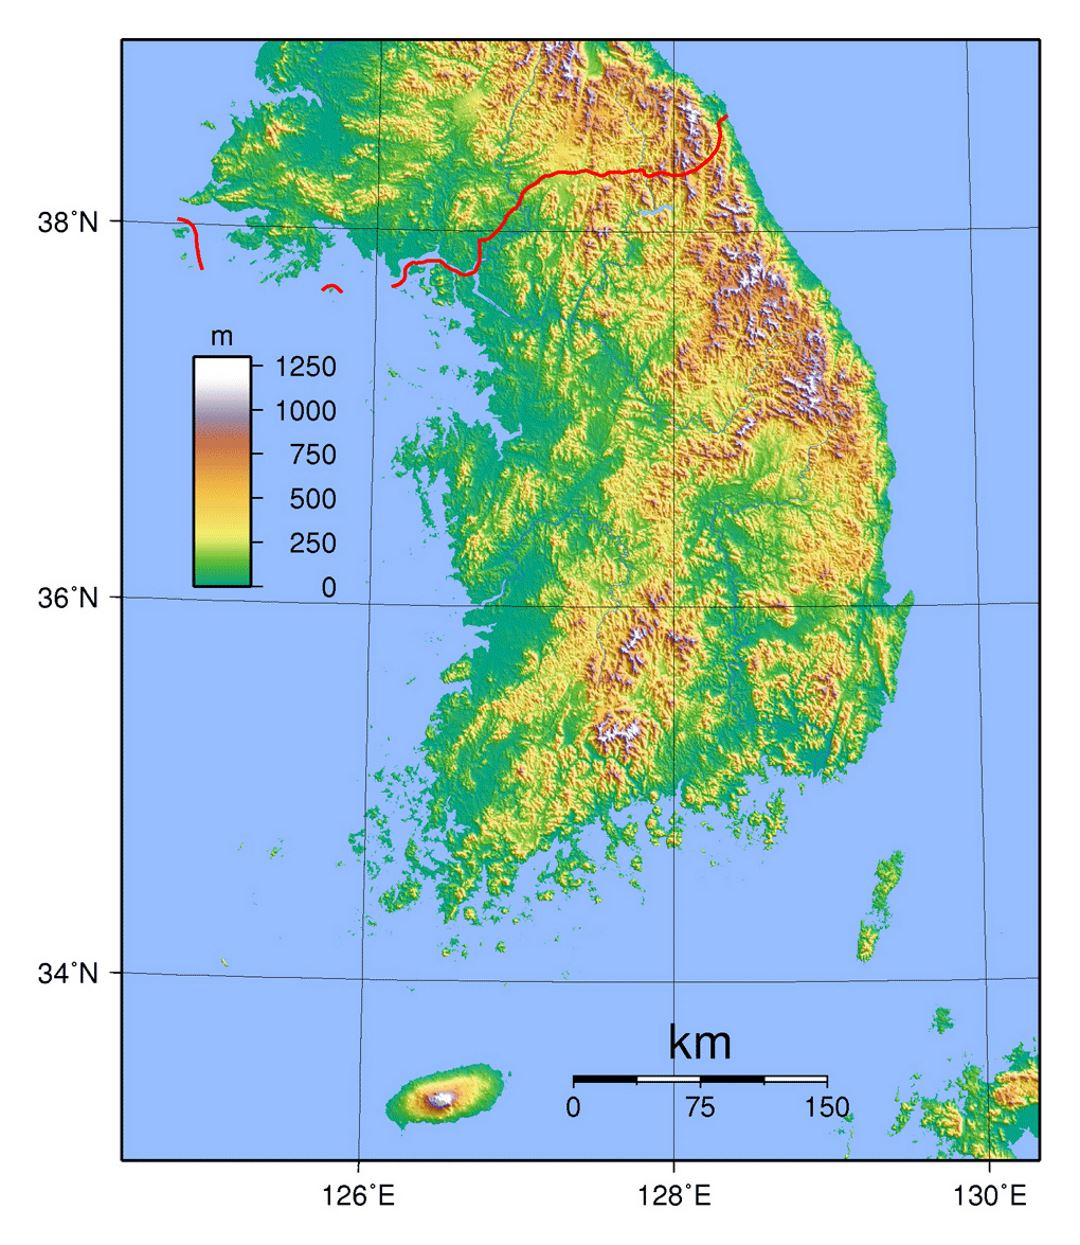 Detallado mapa físico de Corea del Sur